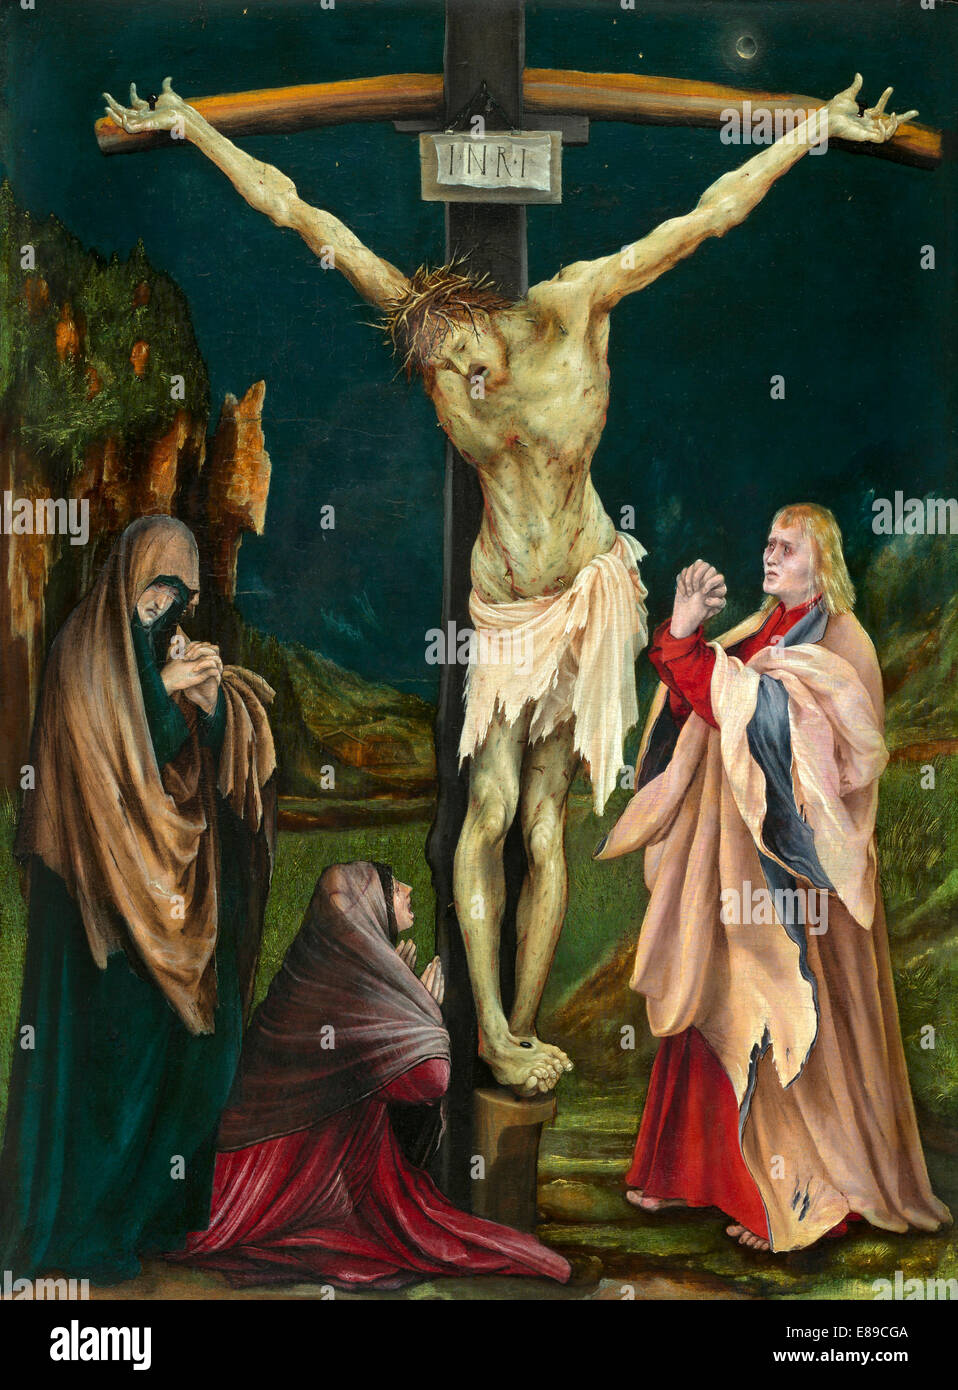 Matthias Grünewald (German, c. 1475/1480 - 1528 ), The Small Crucifixion, c. 1511/1520, oil on panel Stock Photo